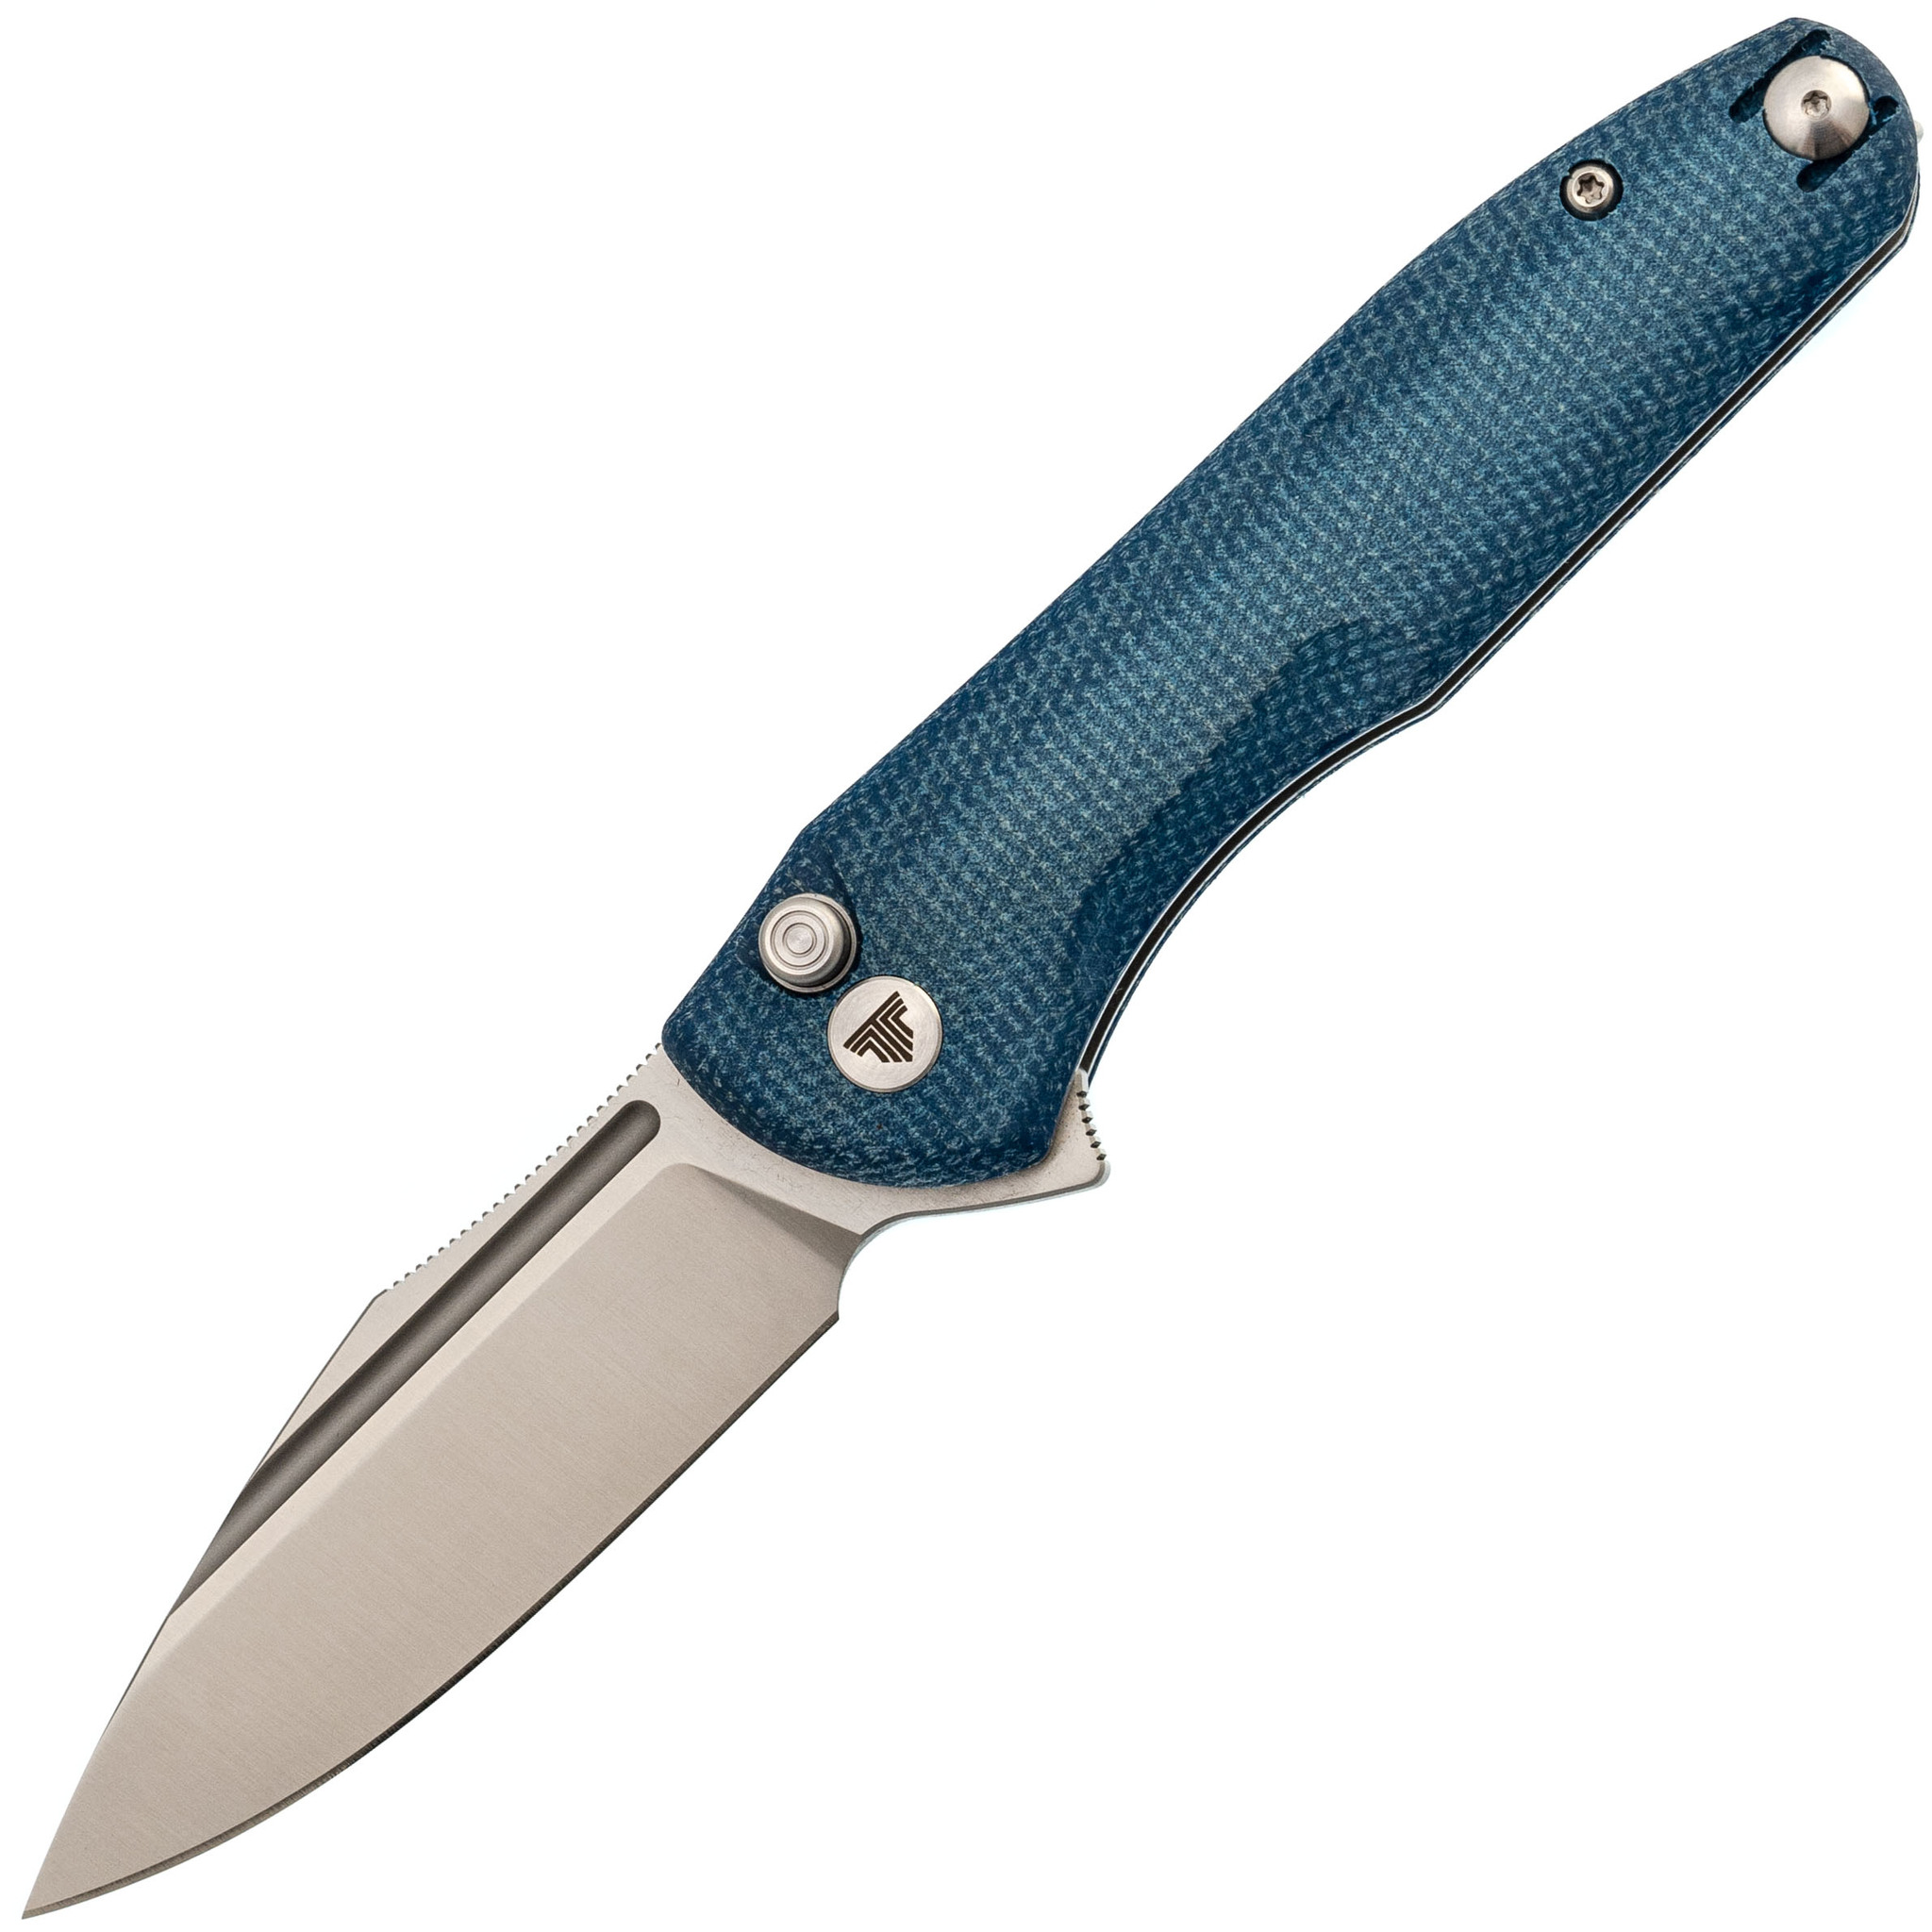 Складной нож Trivisa Antliae-04LMW, сталь 14C28N, рукоять микарта, синий - фото 1